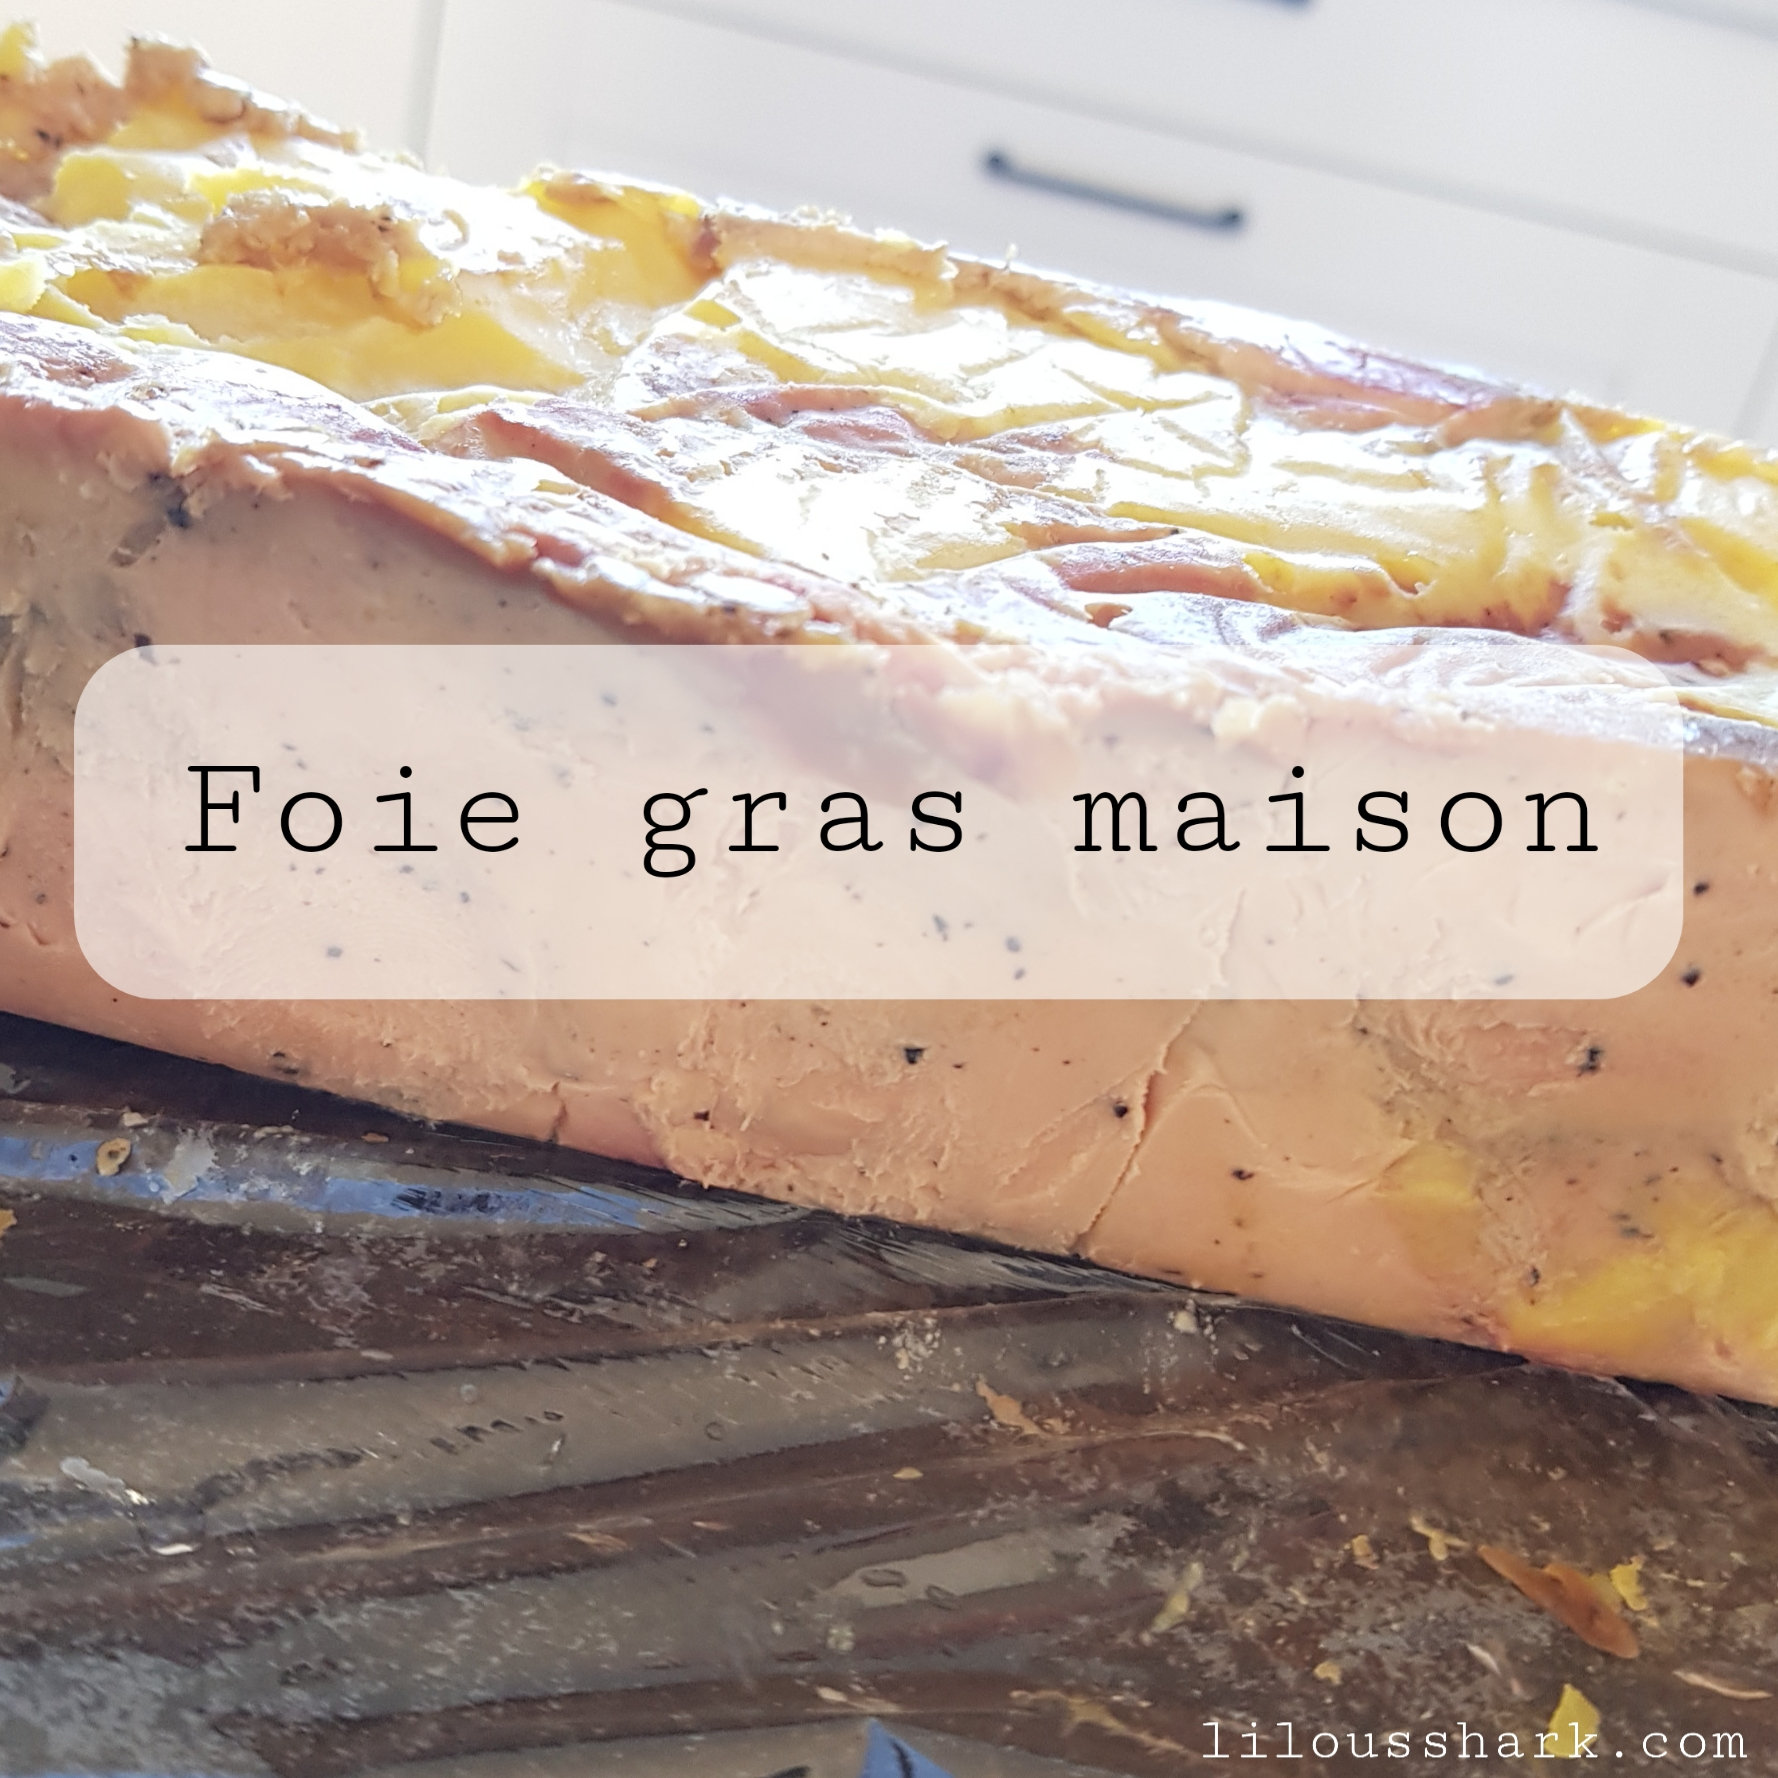 Notre recette de Foie gras